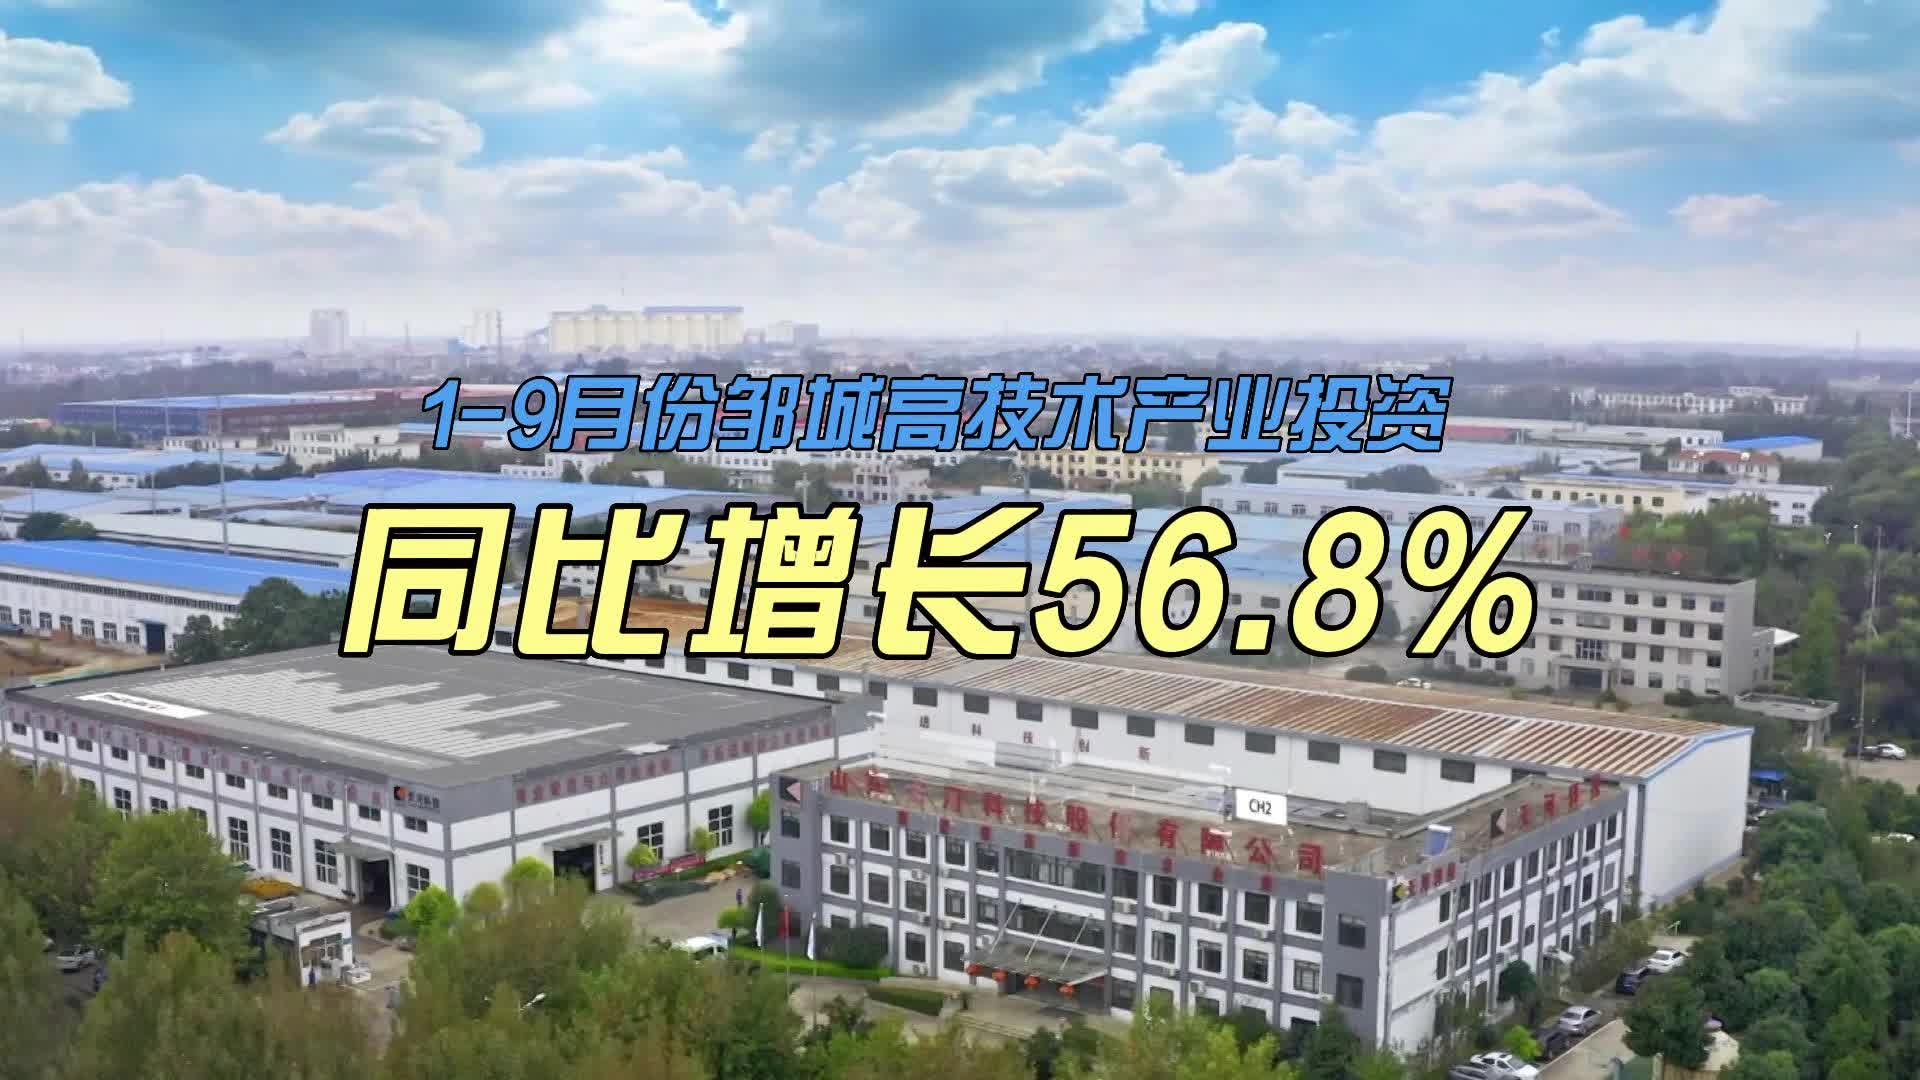 【邹视频·新闻】34秒|1-9月份邹城高技术产业投资同比增长56.8%